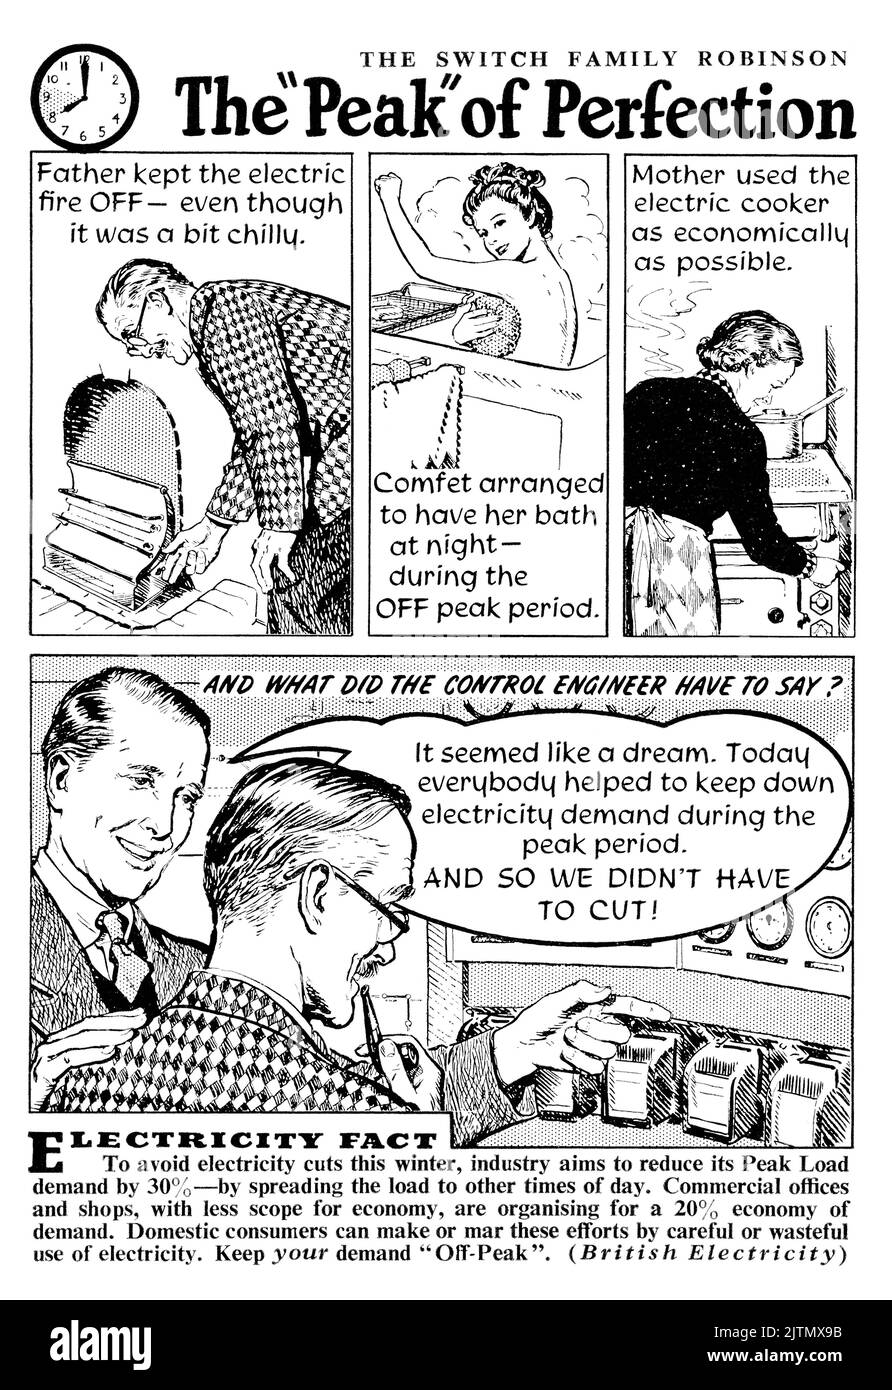 1948 Pubblicità britannica che mostra come evitare interruzioni di corrente distribuendo il carico e utilizzando meno elettricità durante i periodi di bassa stagione. Foto Stock